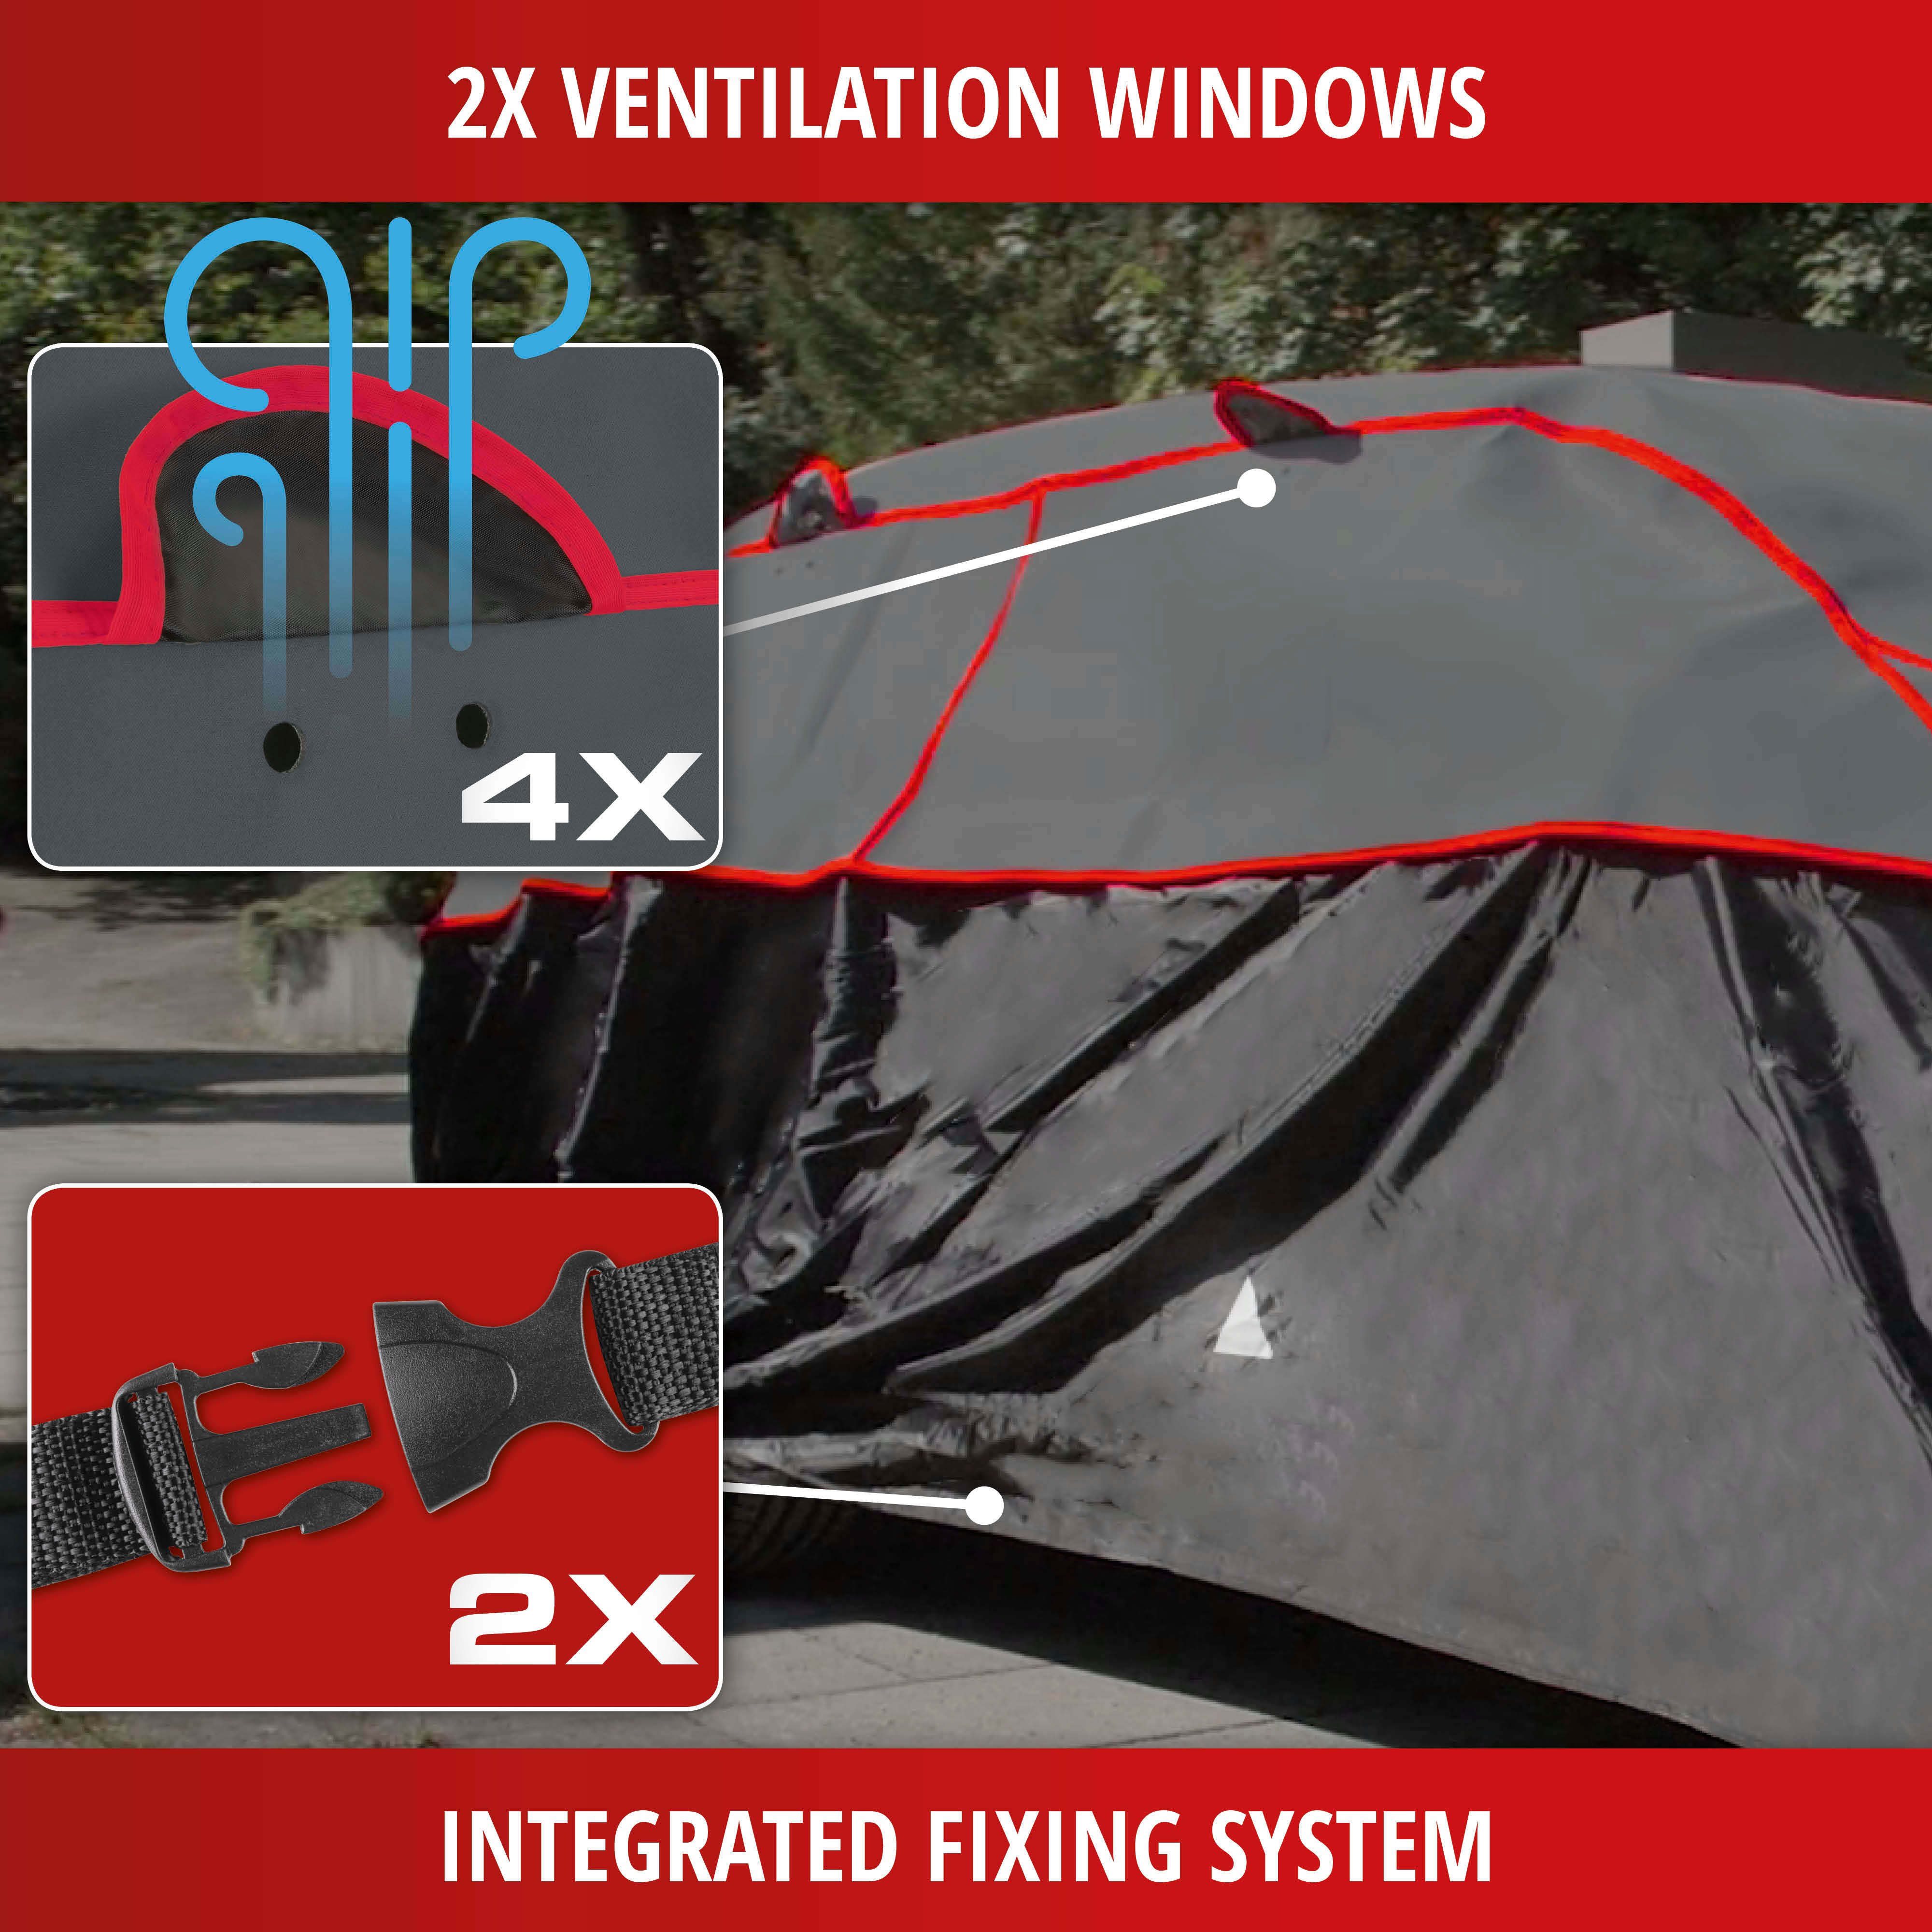 Car hail protection tarpaulin Premium Hybrid SUV size L